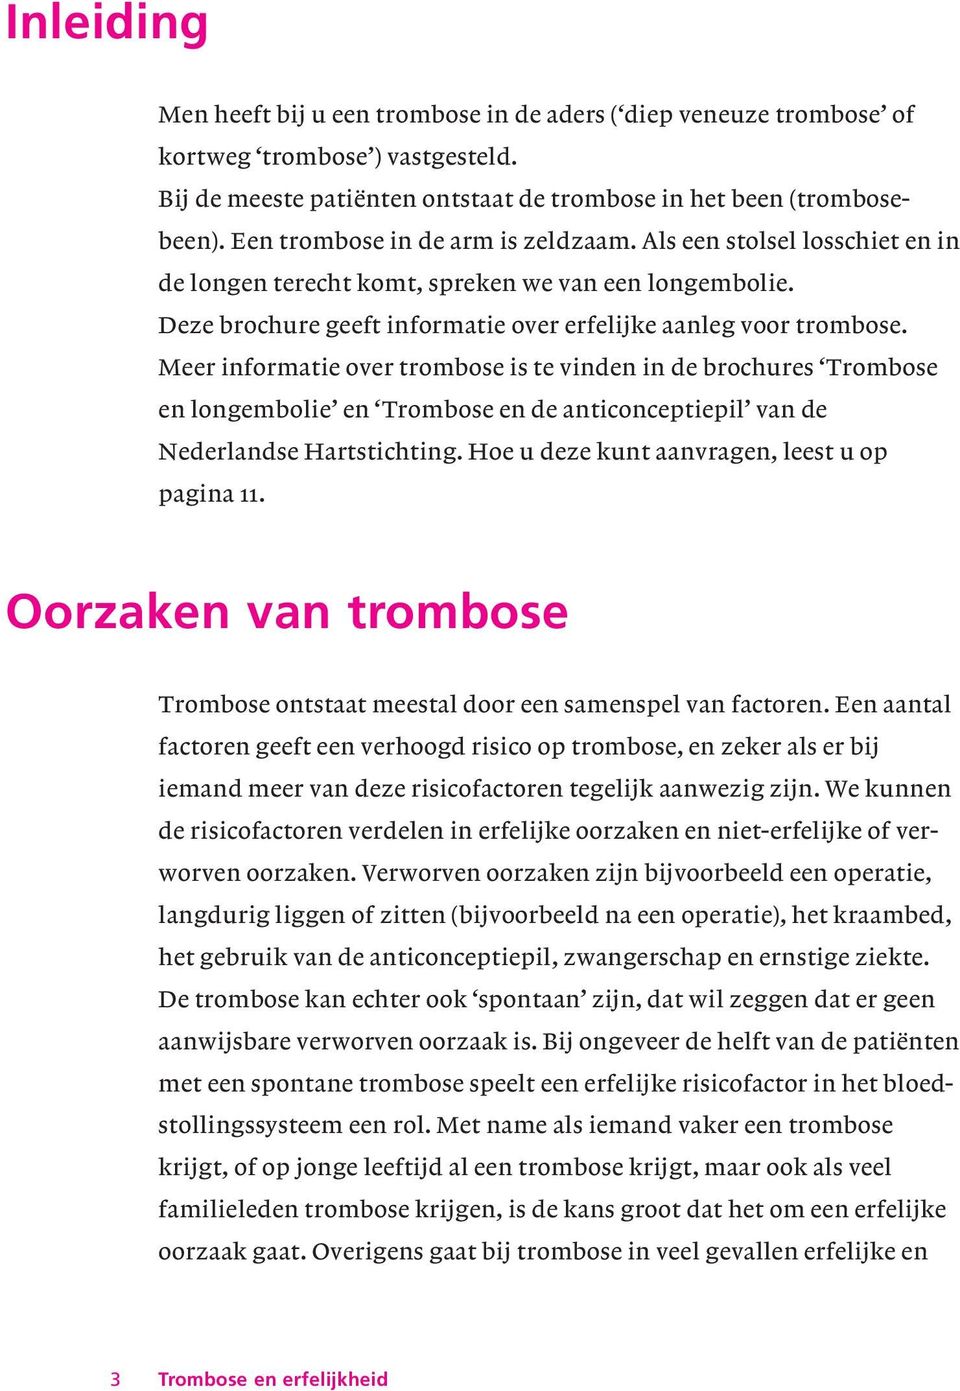 Meer informatie over trombose is te vinden in de brochures Trombose en longembolie en Trombose en de anticonceptiepil van de Nederlandse Hartstichting. Hoe u deze kunt aanvragen, leest u op pagina 11.